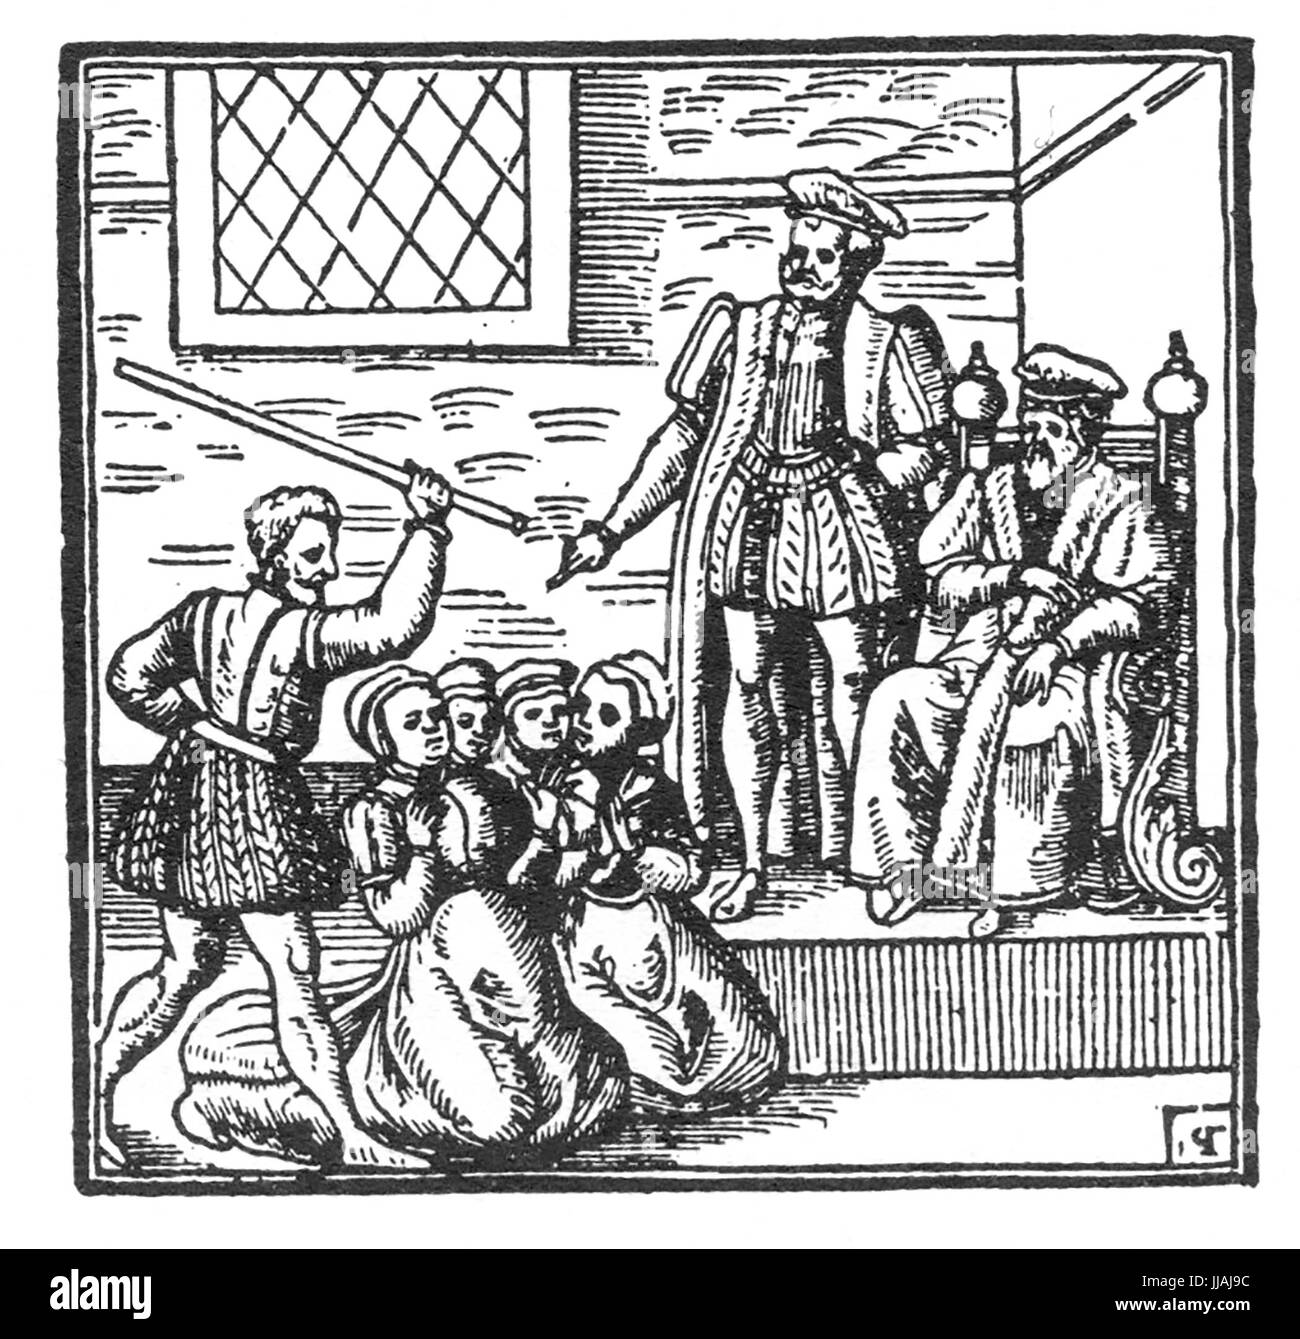 Procès des sorcières de BEWICK NORD 1590-1592. Le roi Jacques VI d'Écosse examine certains des accusés. Gravure sur bois dans son Demonologie publié en 1597 Banque D'Images